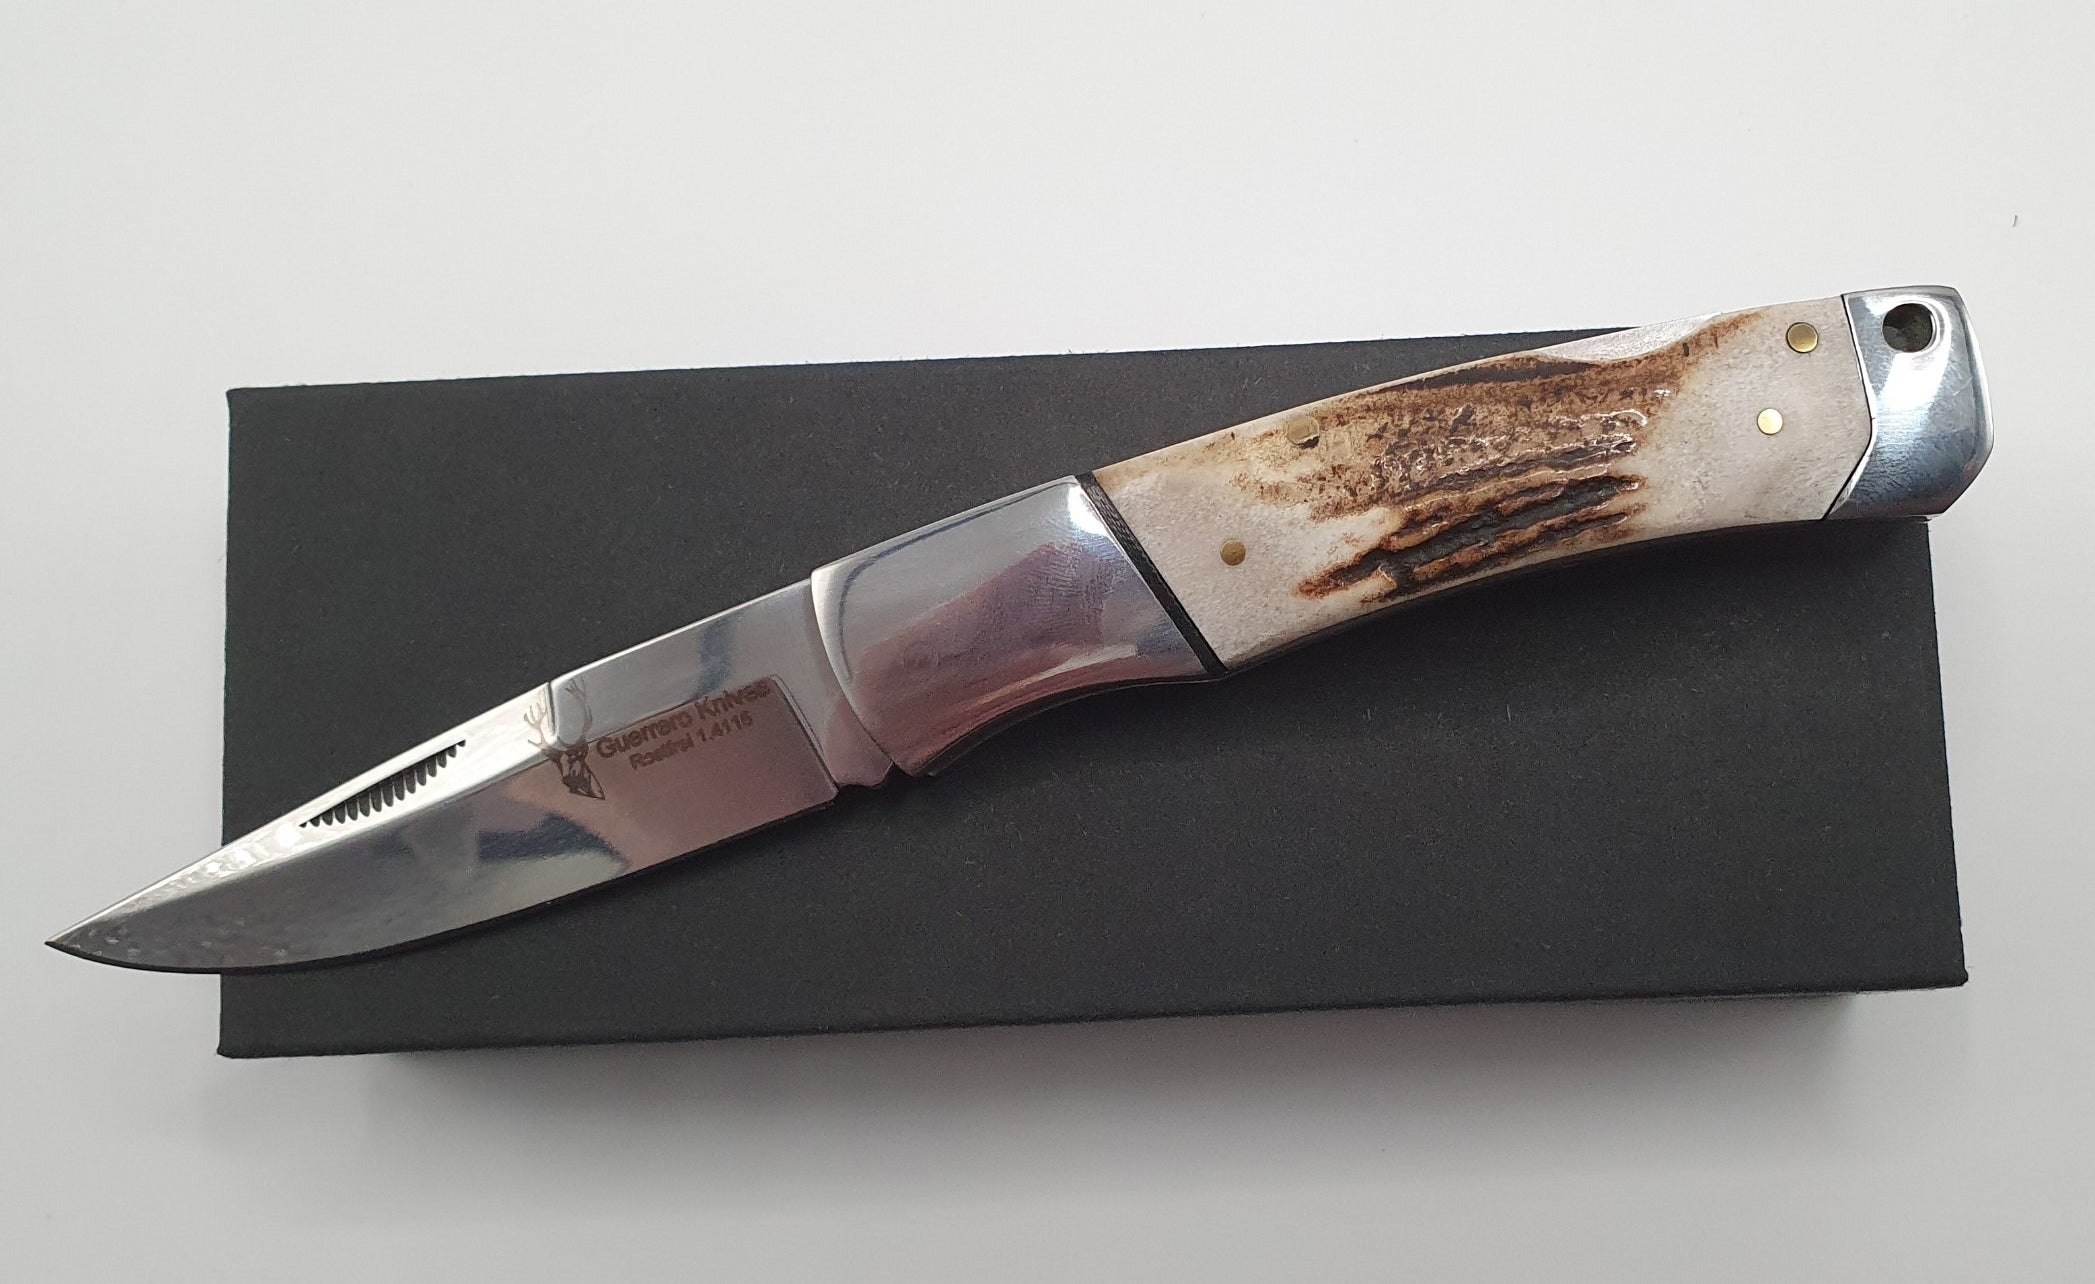 Hochwertiges und edles Guerrero Knives Taschenmesser / Integralmesser mit Hirschhorngriff